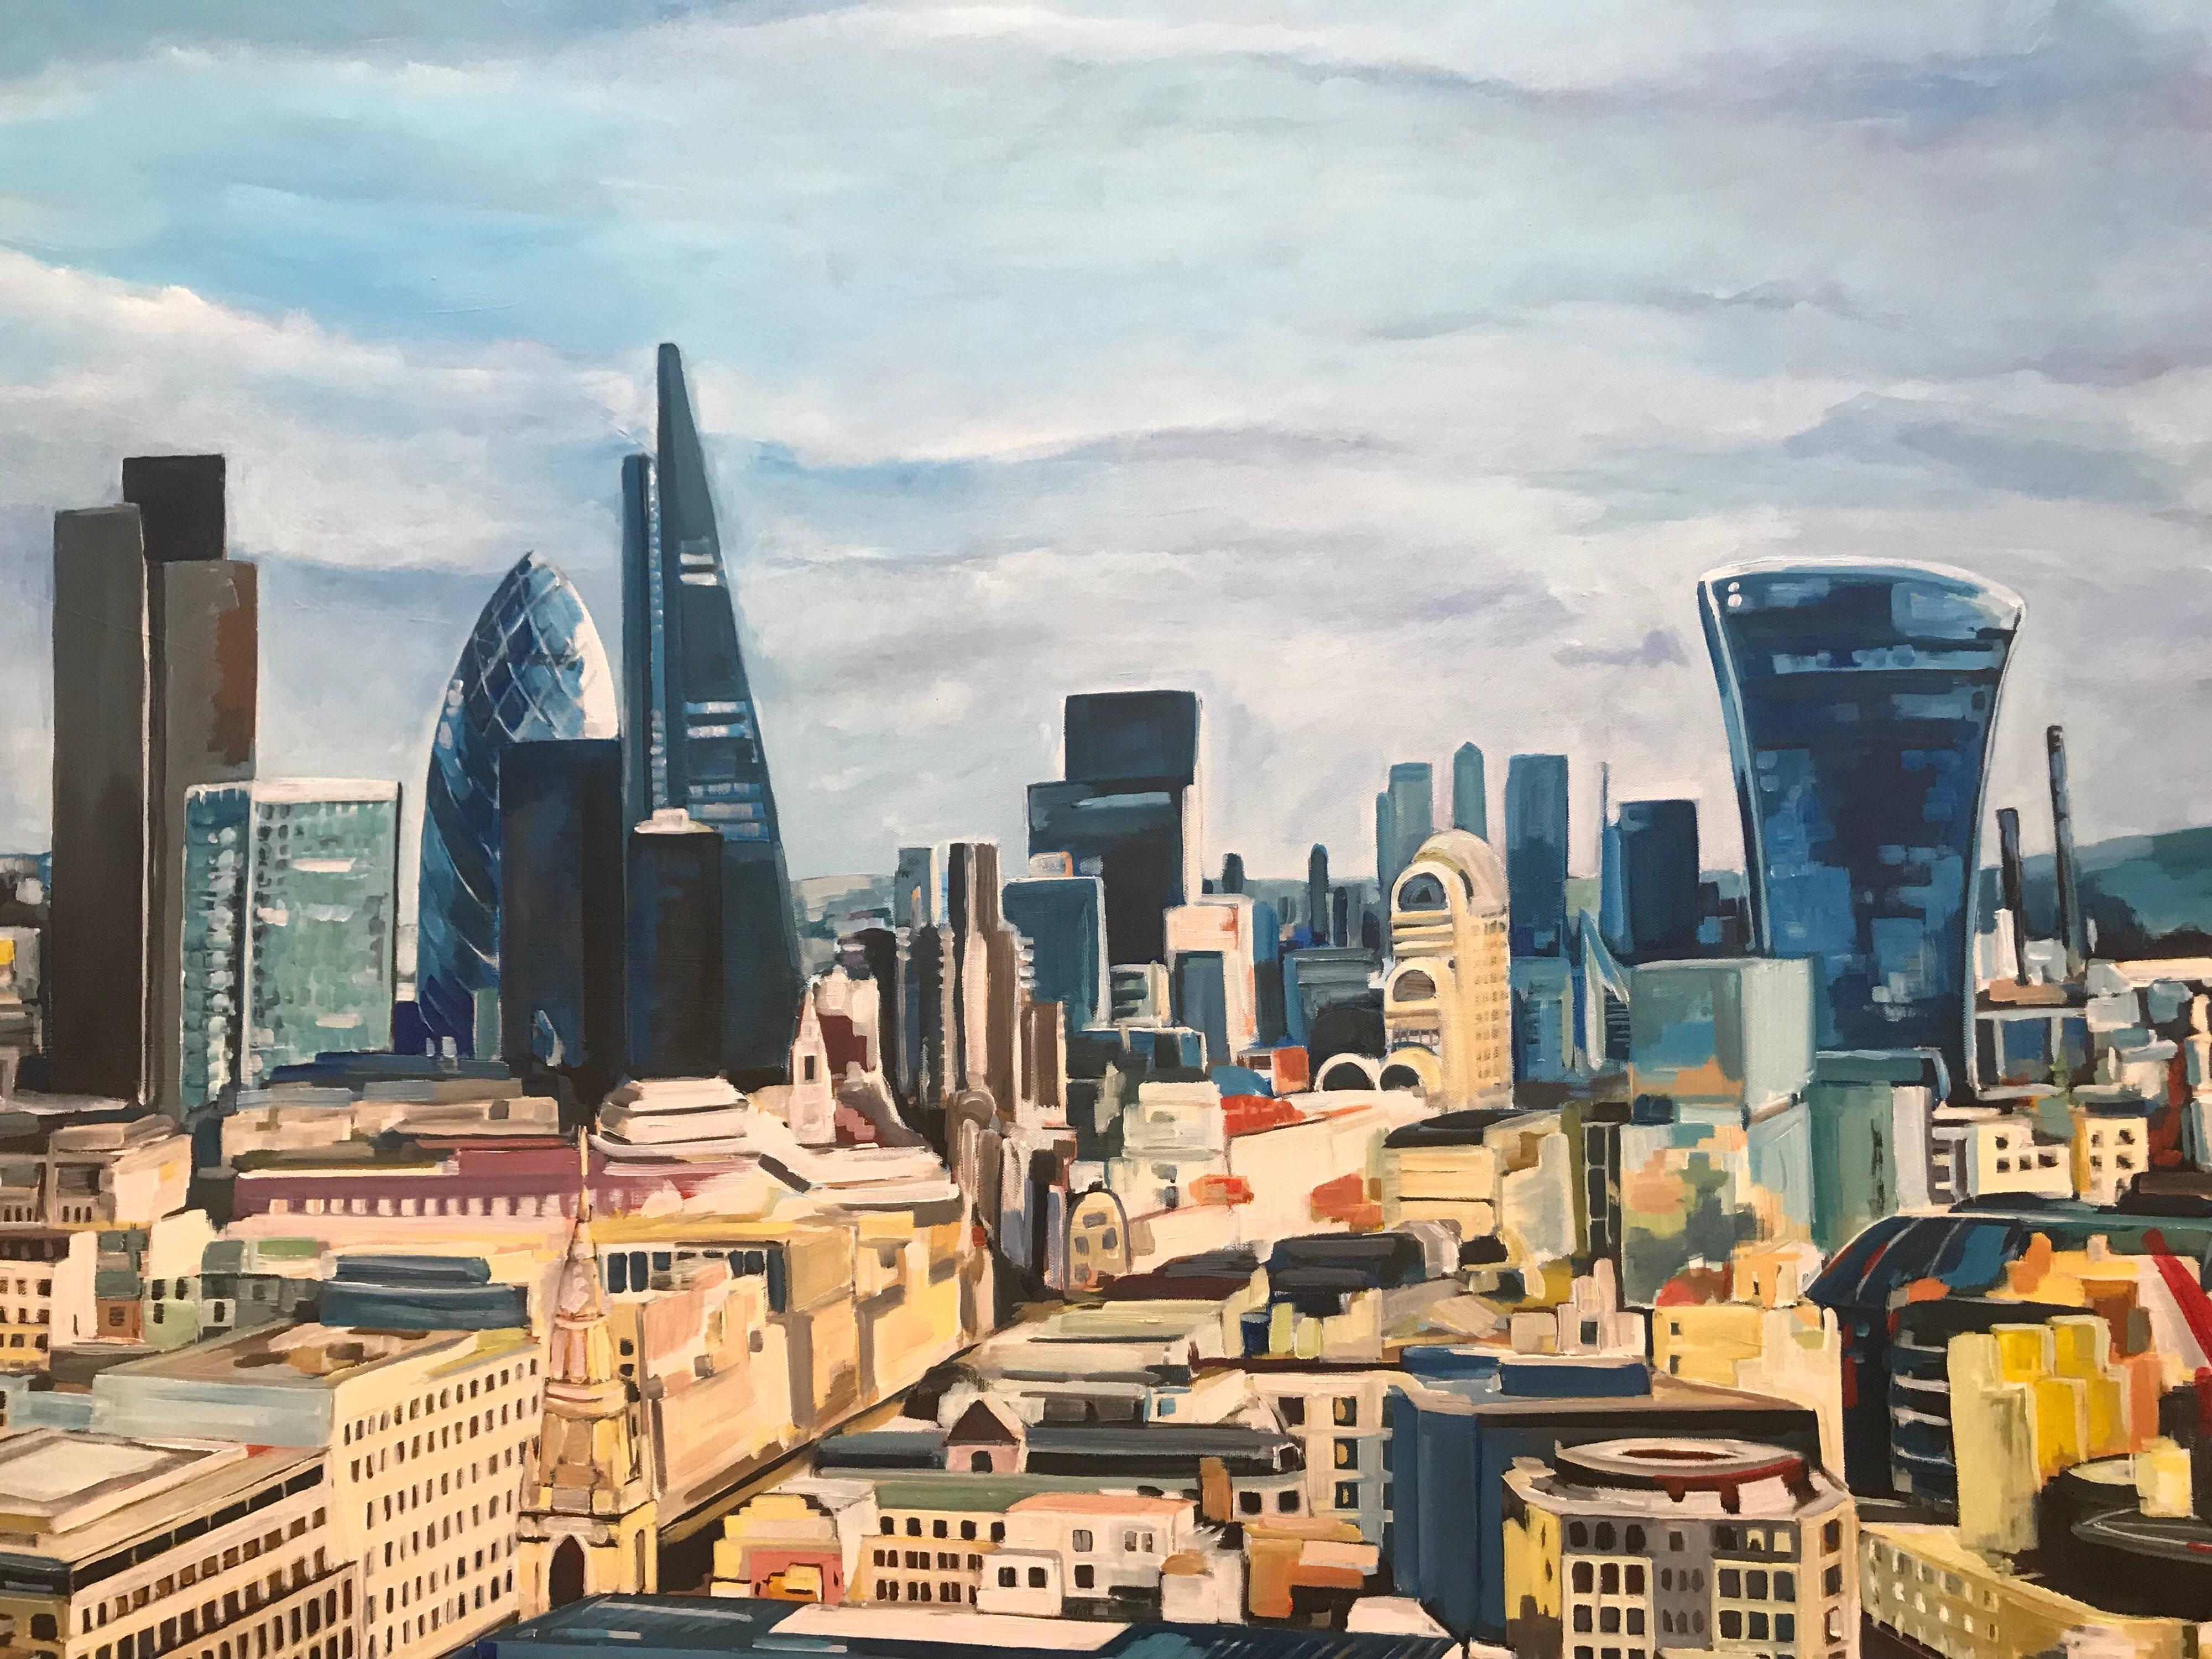 Originalgemälde Stadt der Londoner Skyline von der britischen Urban Artist Angela Wakefield. Dieses Gemälde zeigt den Blick von der St. Paul's Cathedral in östlicher Richtung über die Londoner Stadtlandschaft. Wie Sie sehen können, ist die umgebende